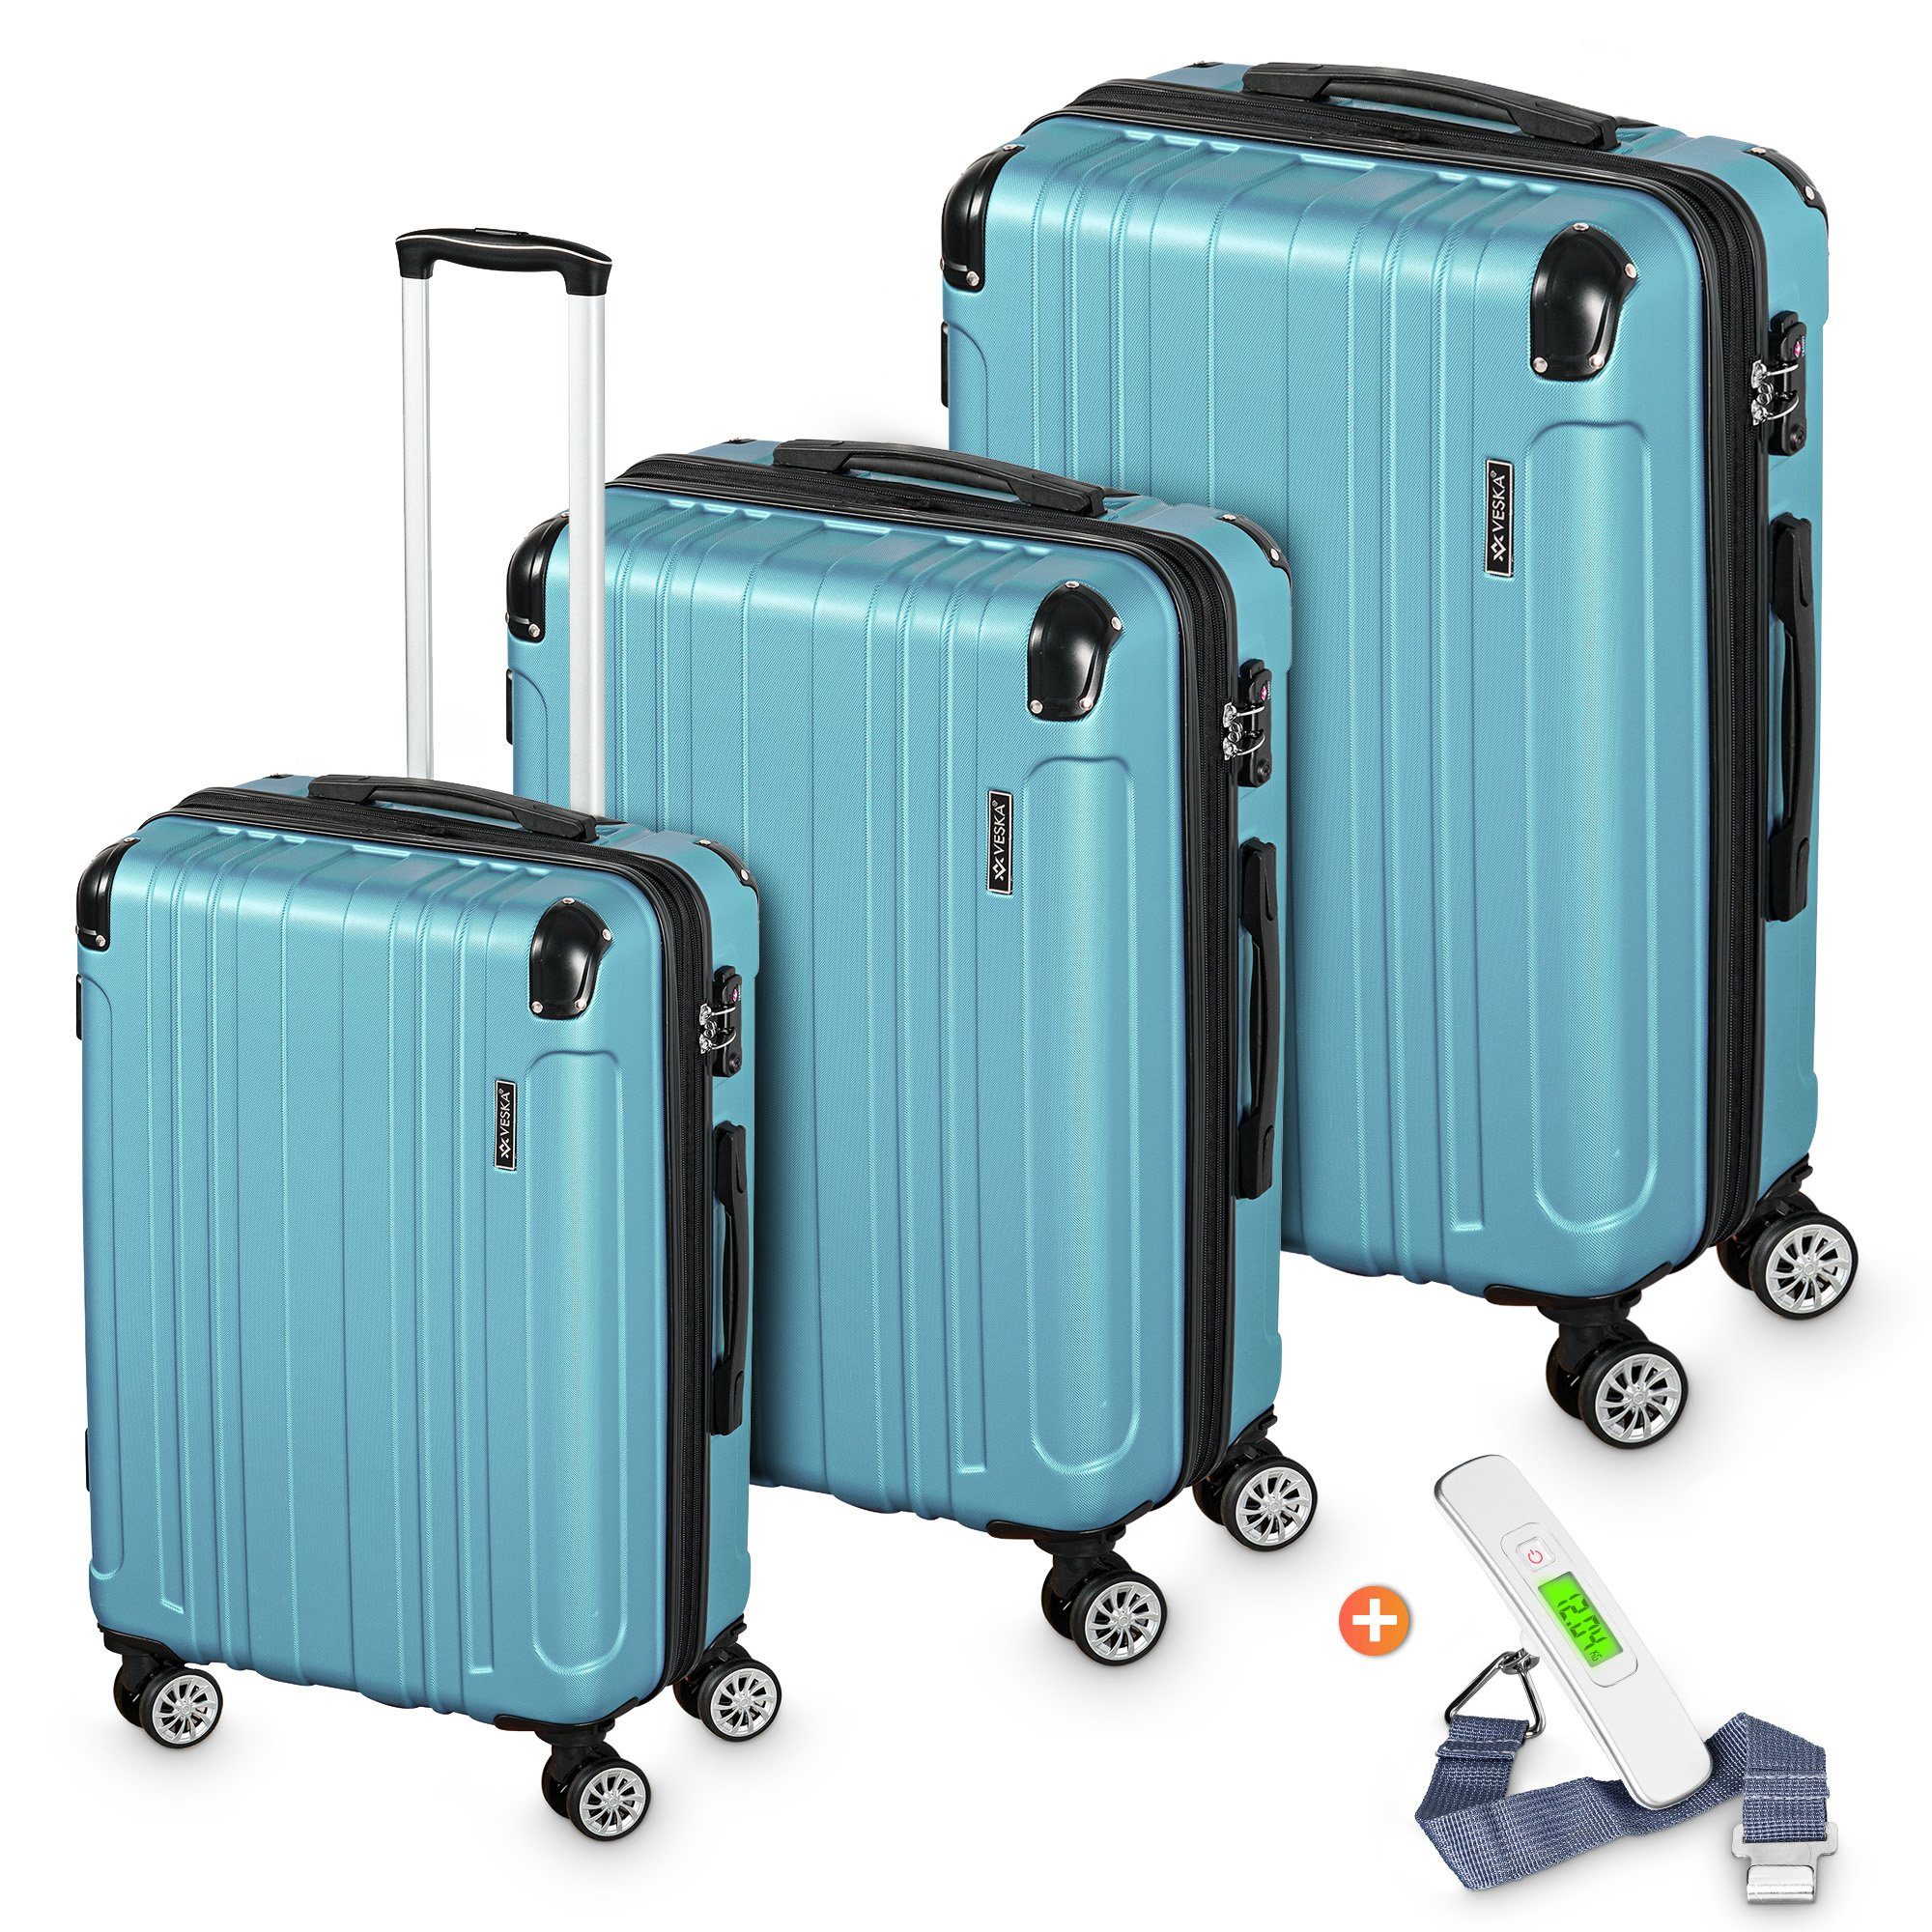 VESKA Trolleyset Hartschalenkoffer Kofferset 3 teilig mit TSA Zahlenschloss 4 Rollen, ABS-Hartschale, Reisekoffer Trolley Rollkoffer Koffer nebel-blau